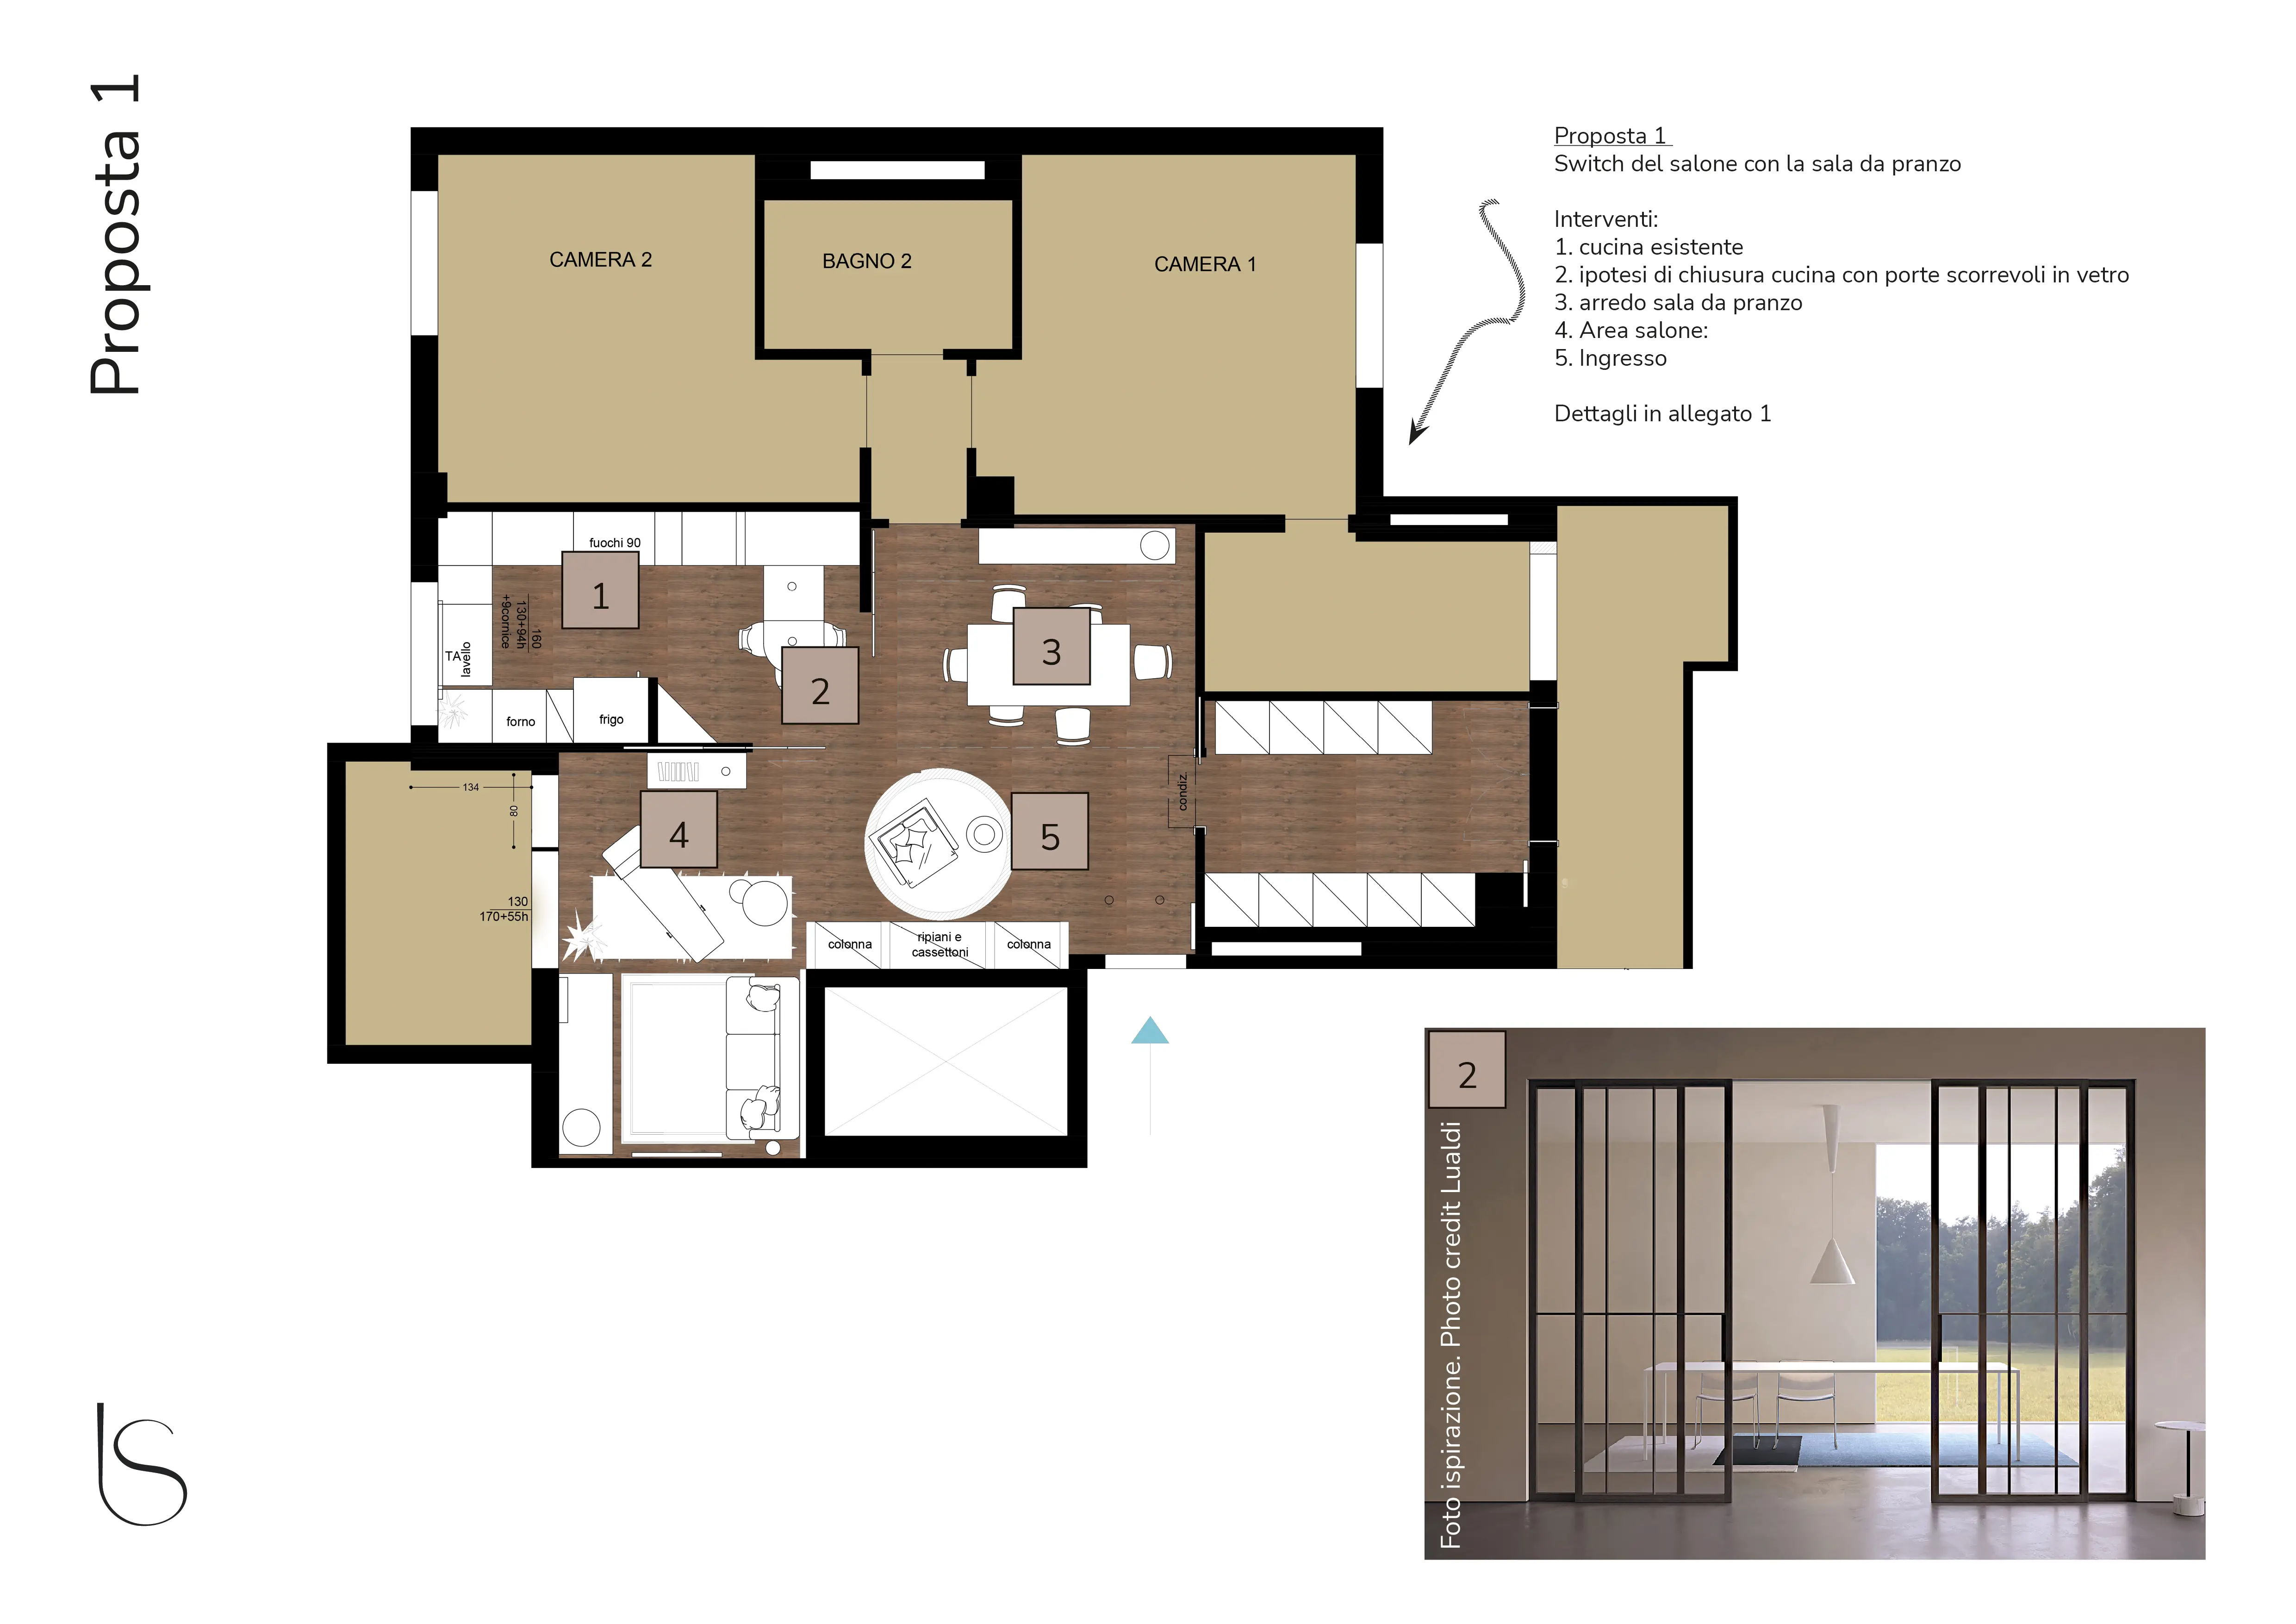 Première proposition de plan de redistribution des espaces par le studio Elles Interior Design, qui a mené l'étude d'aménagement intérieur d'un appartement en cours de rénovation.